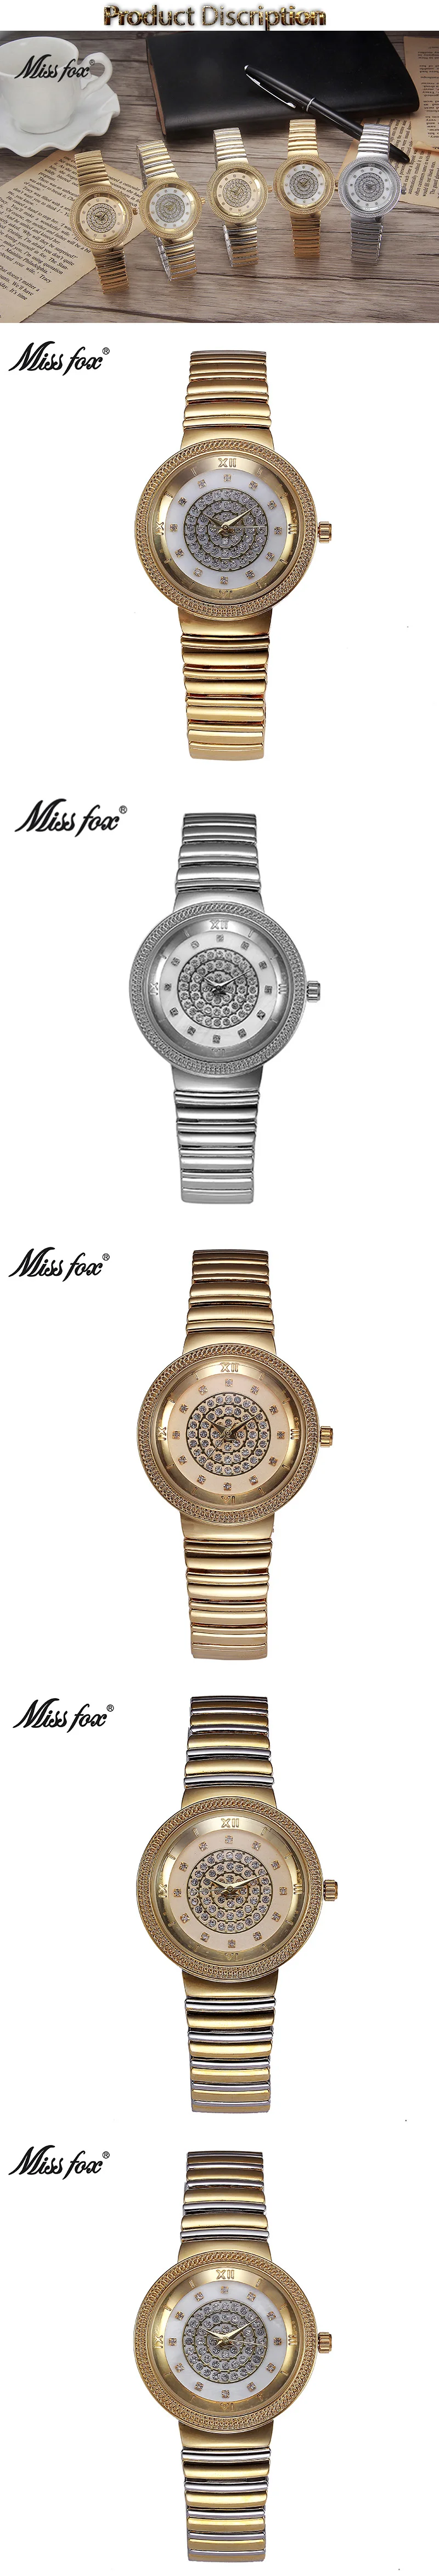 MISSFOX женские золотые часы модный бренд горный хрусталь японский механизм маленькие металлические часы с браслетом Carnaval Импортируется из Китая Kol Saati